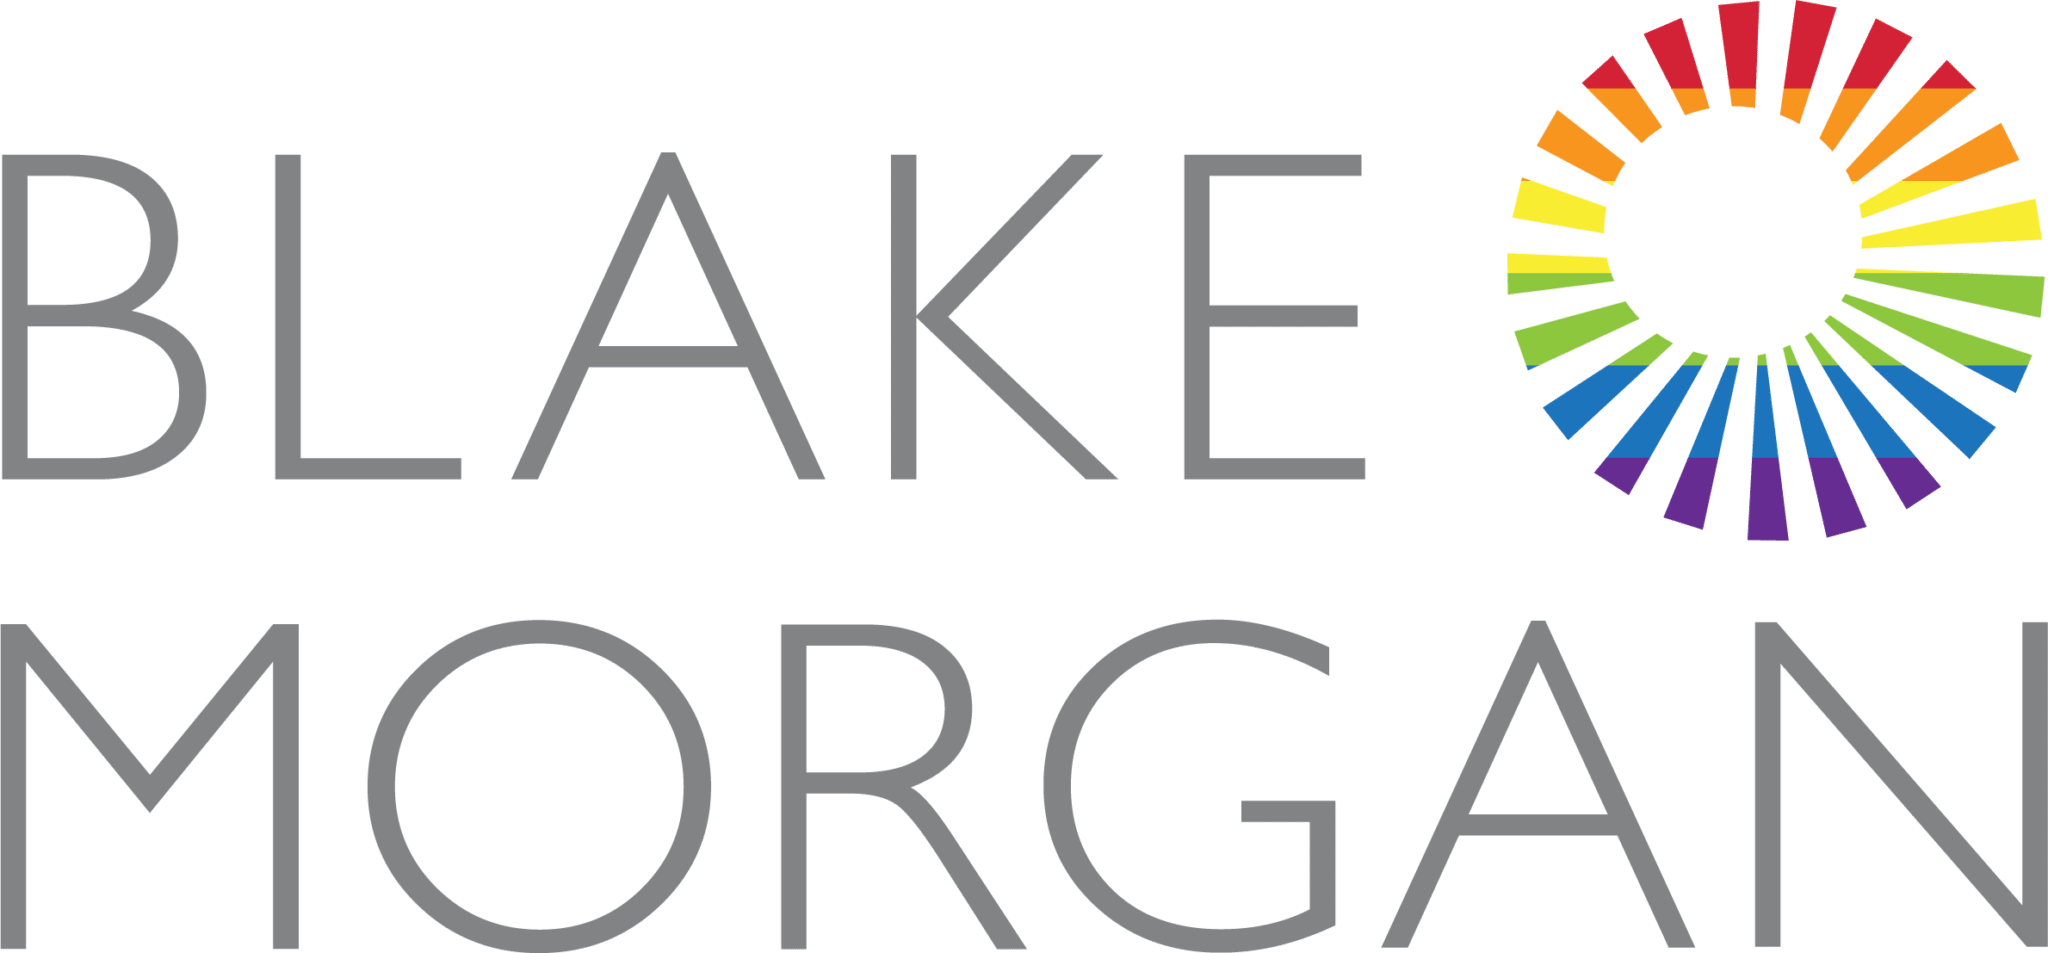 Blake Morgan Logo